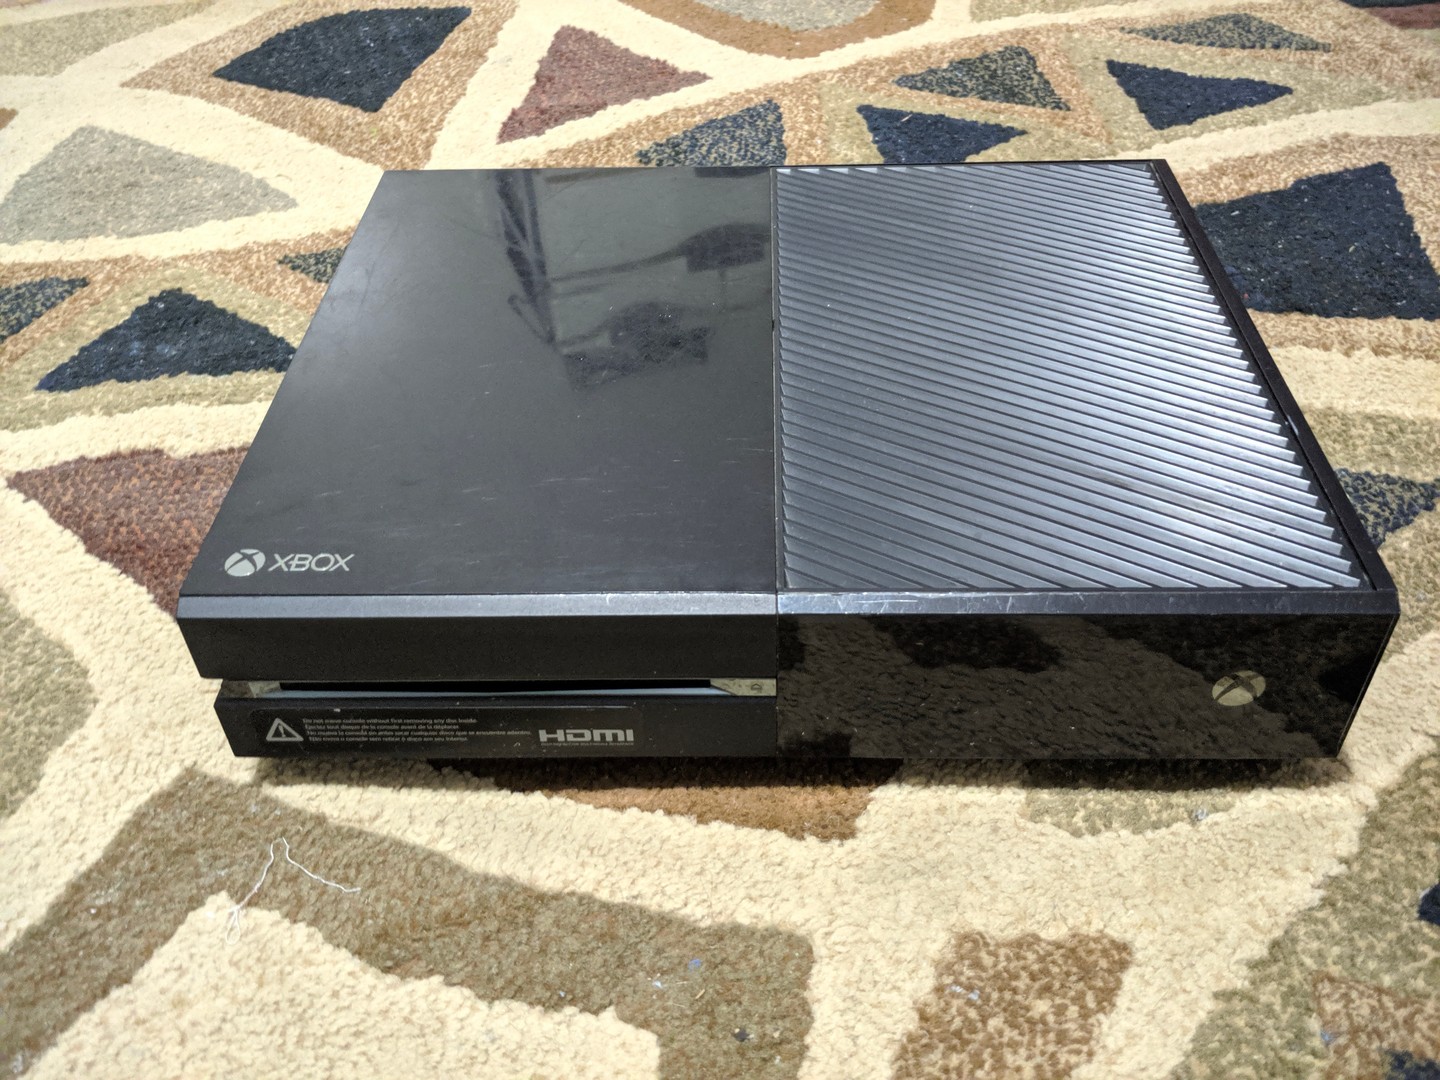 consolas y videojuegos - Xbox One 500GB Negro